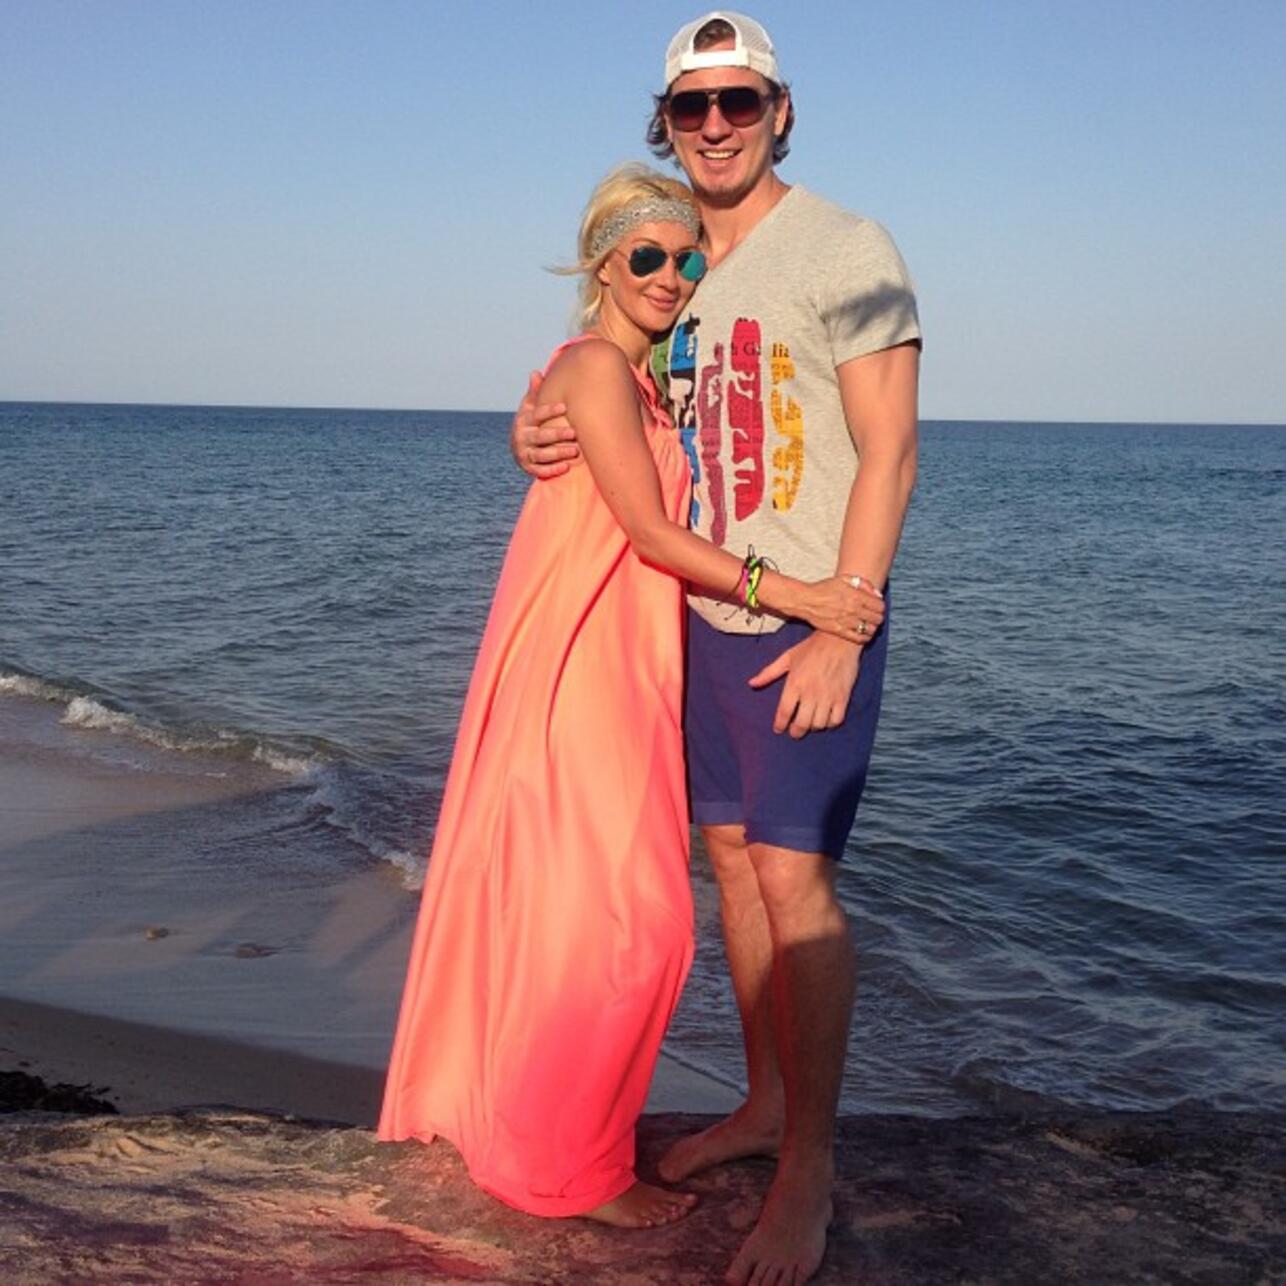 Лера Кудрявцева засветила попу на пляже